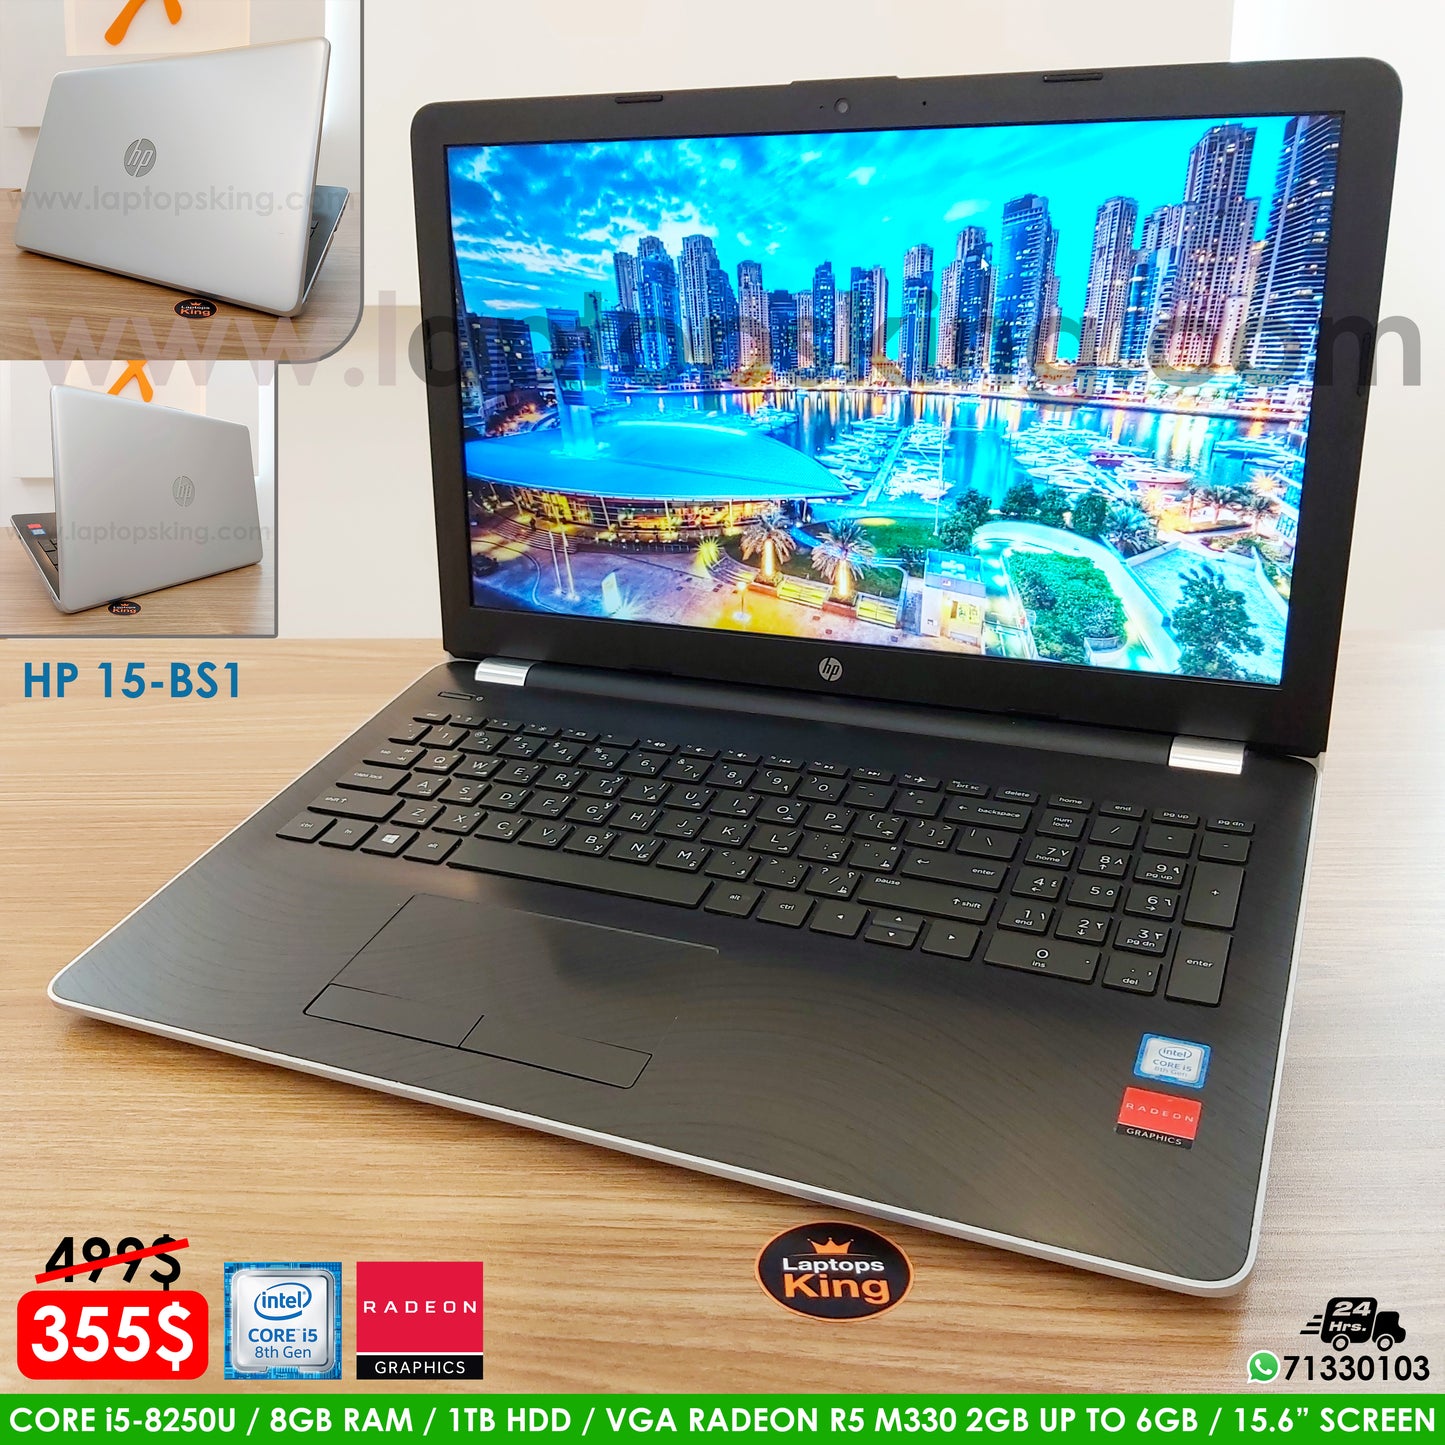 HP 15-Bs1 i5-8250u Radeon R5 M330 2gb Up To 6gb Laptop (Used Very Clean)